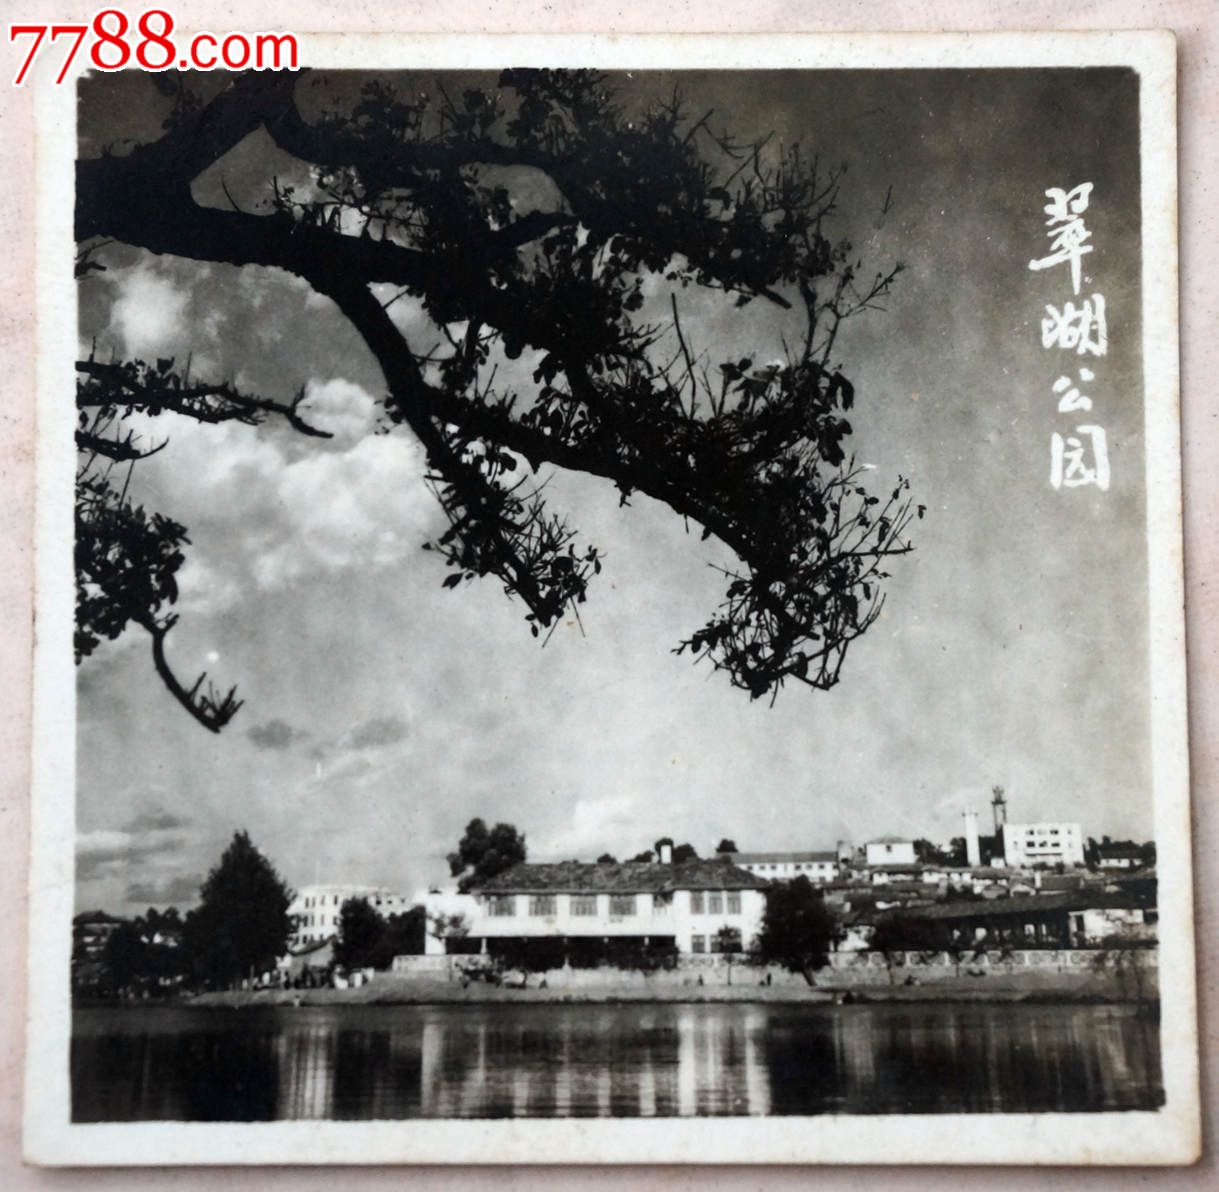 建国初昆明翠湖公园风光照,老照片,风光建筑照,五十年代(20世纪),黑白